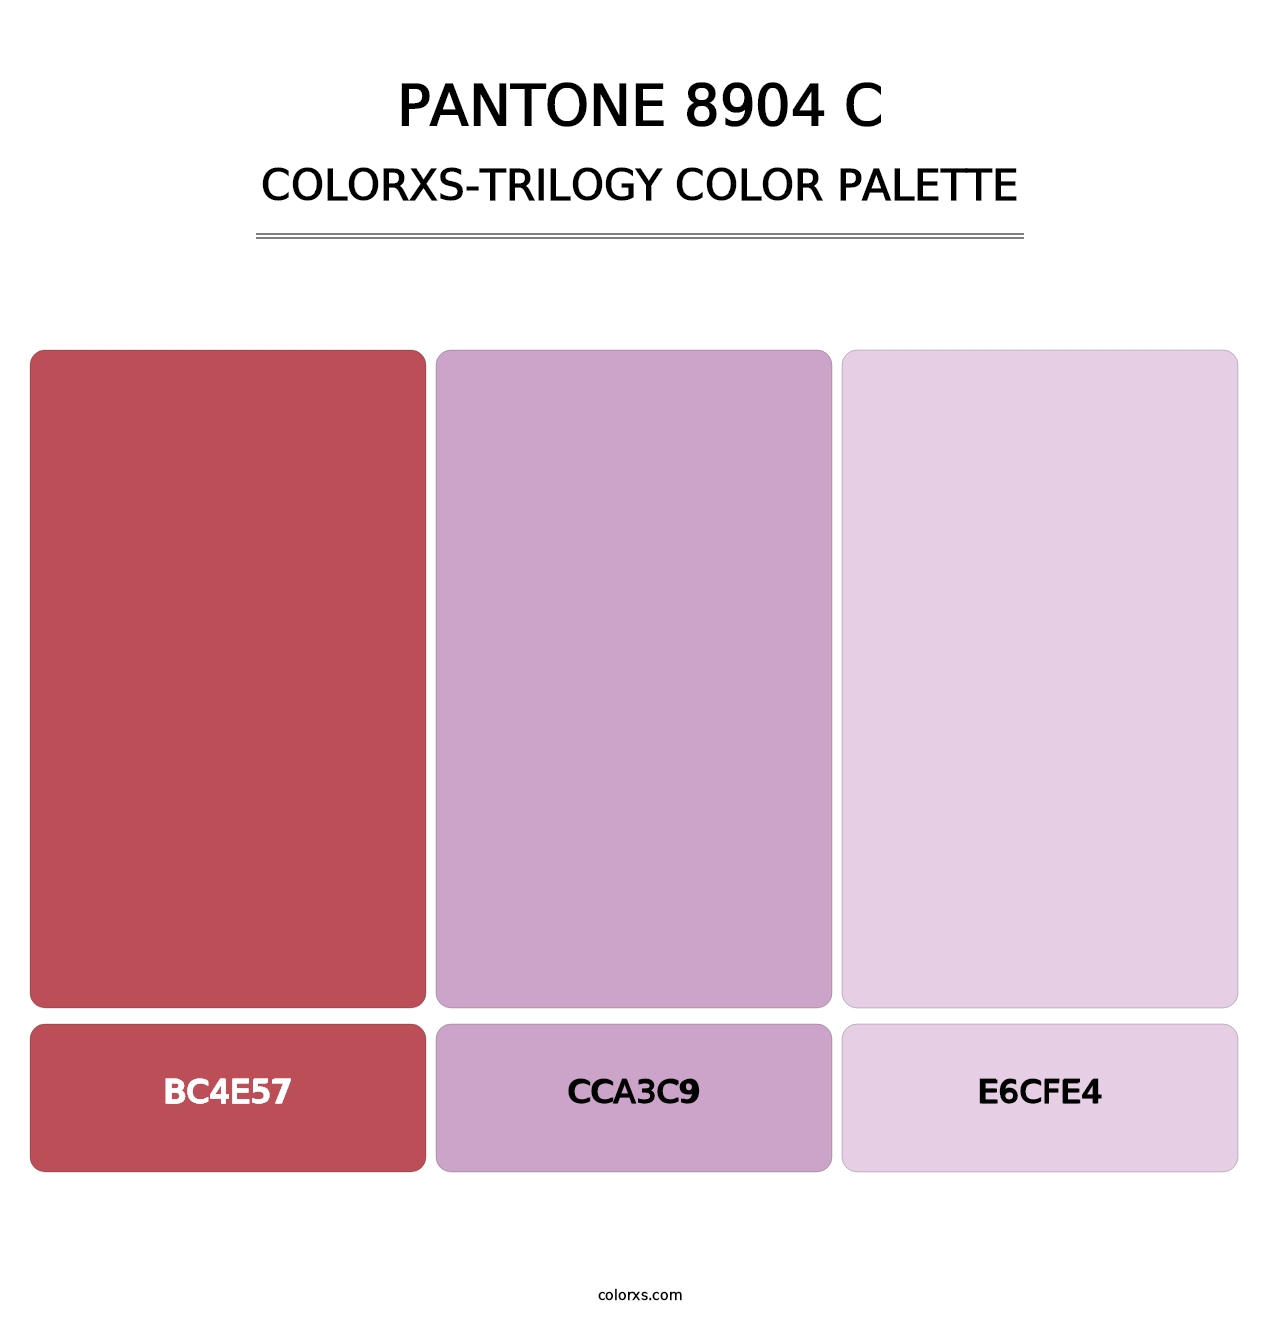 PANTONE 8904 C - Colorxs Trilogy Palette